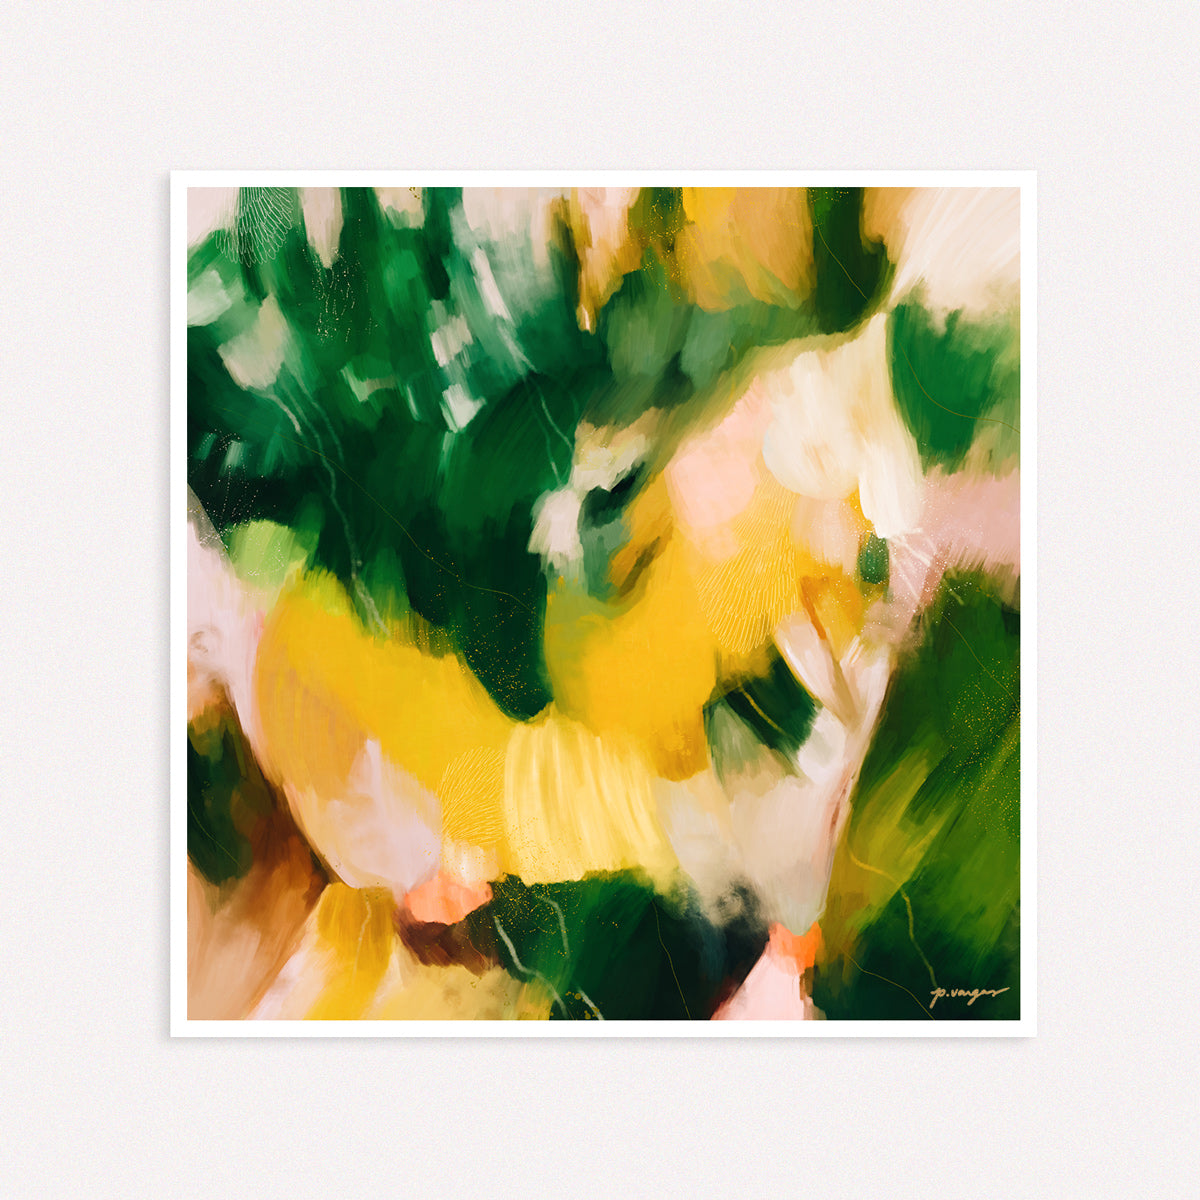 La Selva - Tropical abstract art print by Parima Studio